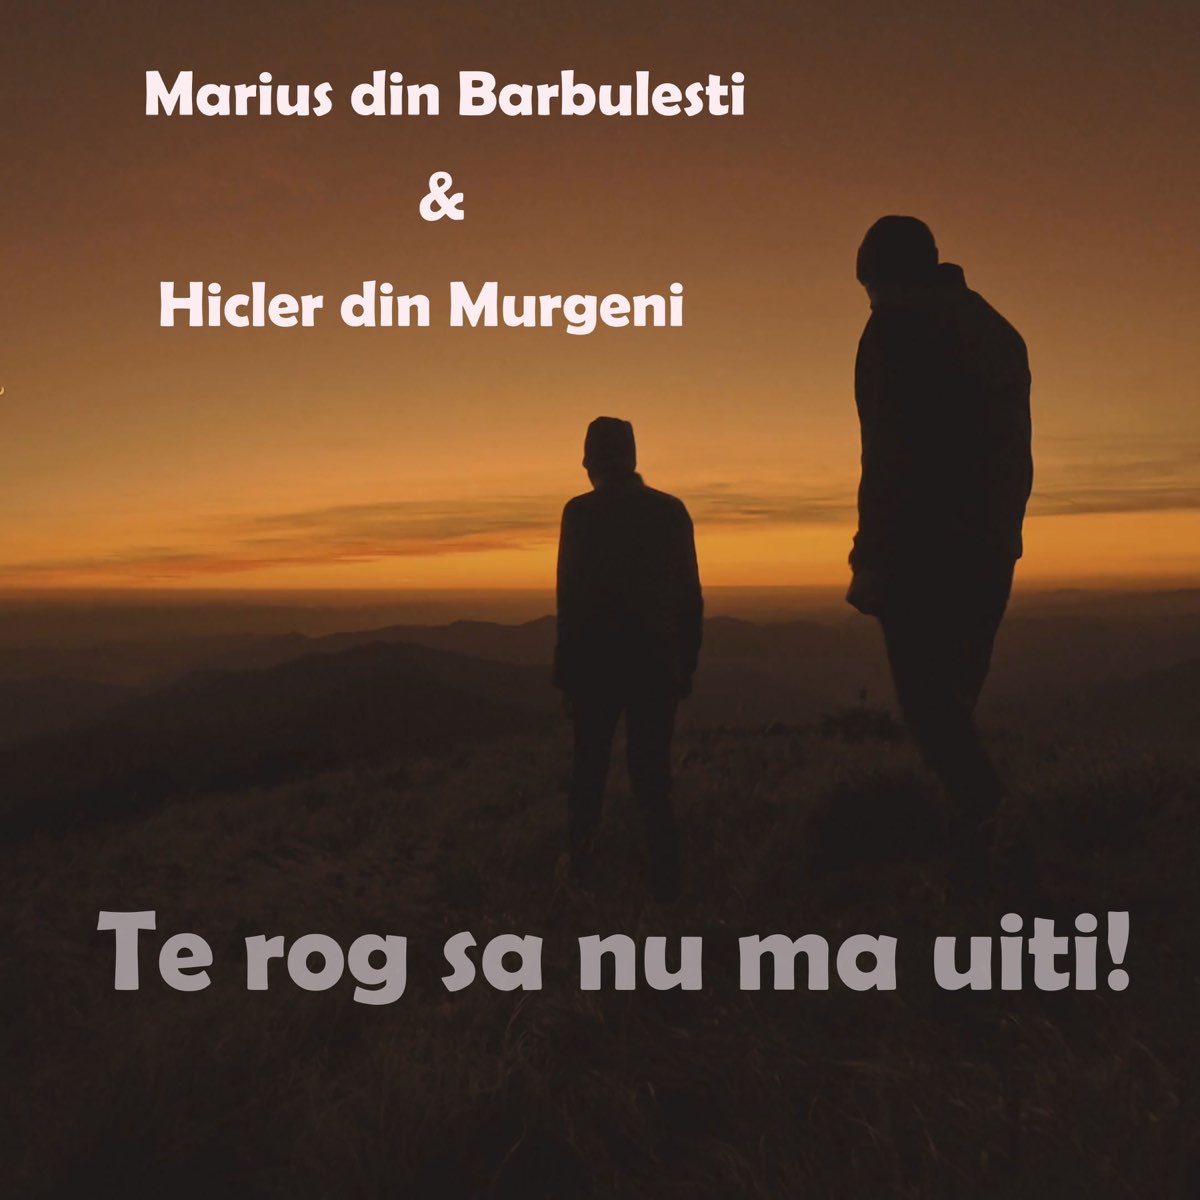 Te rog sa nu ma uiti! - Single by Marius din Barbulesti & Hicler Din  Murgeni on Apple Music